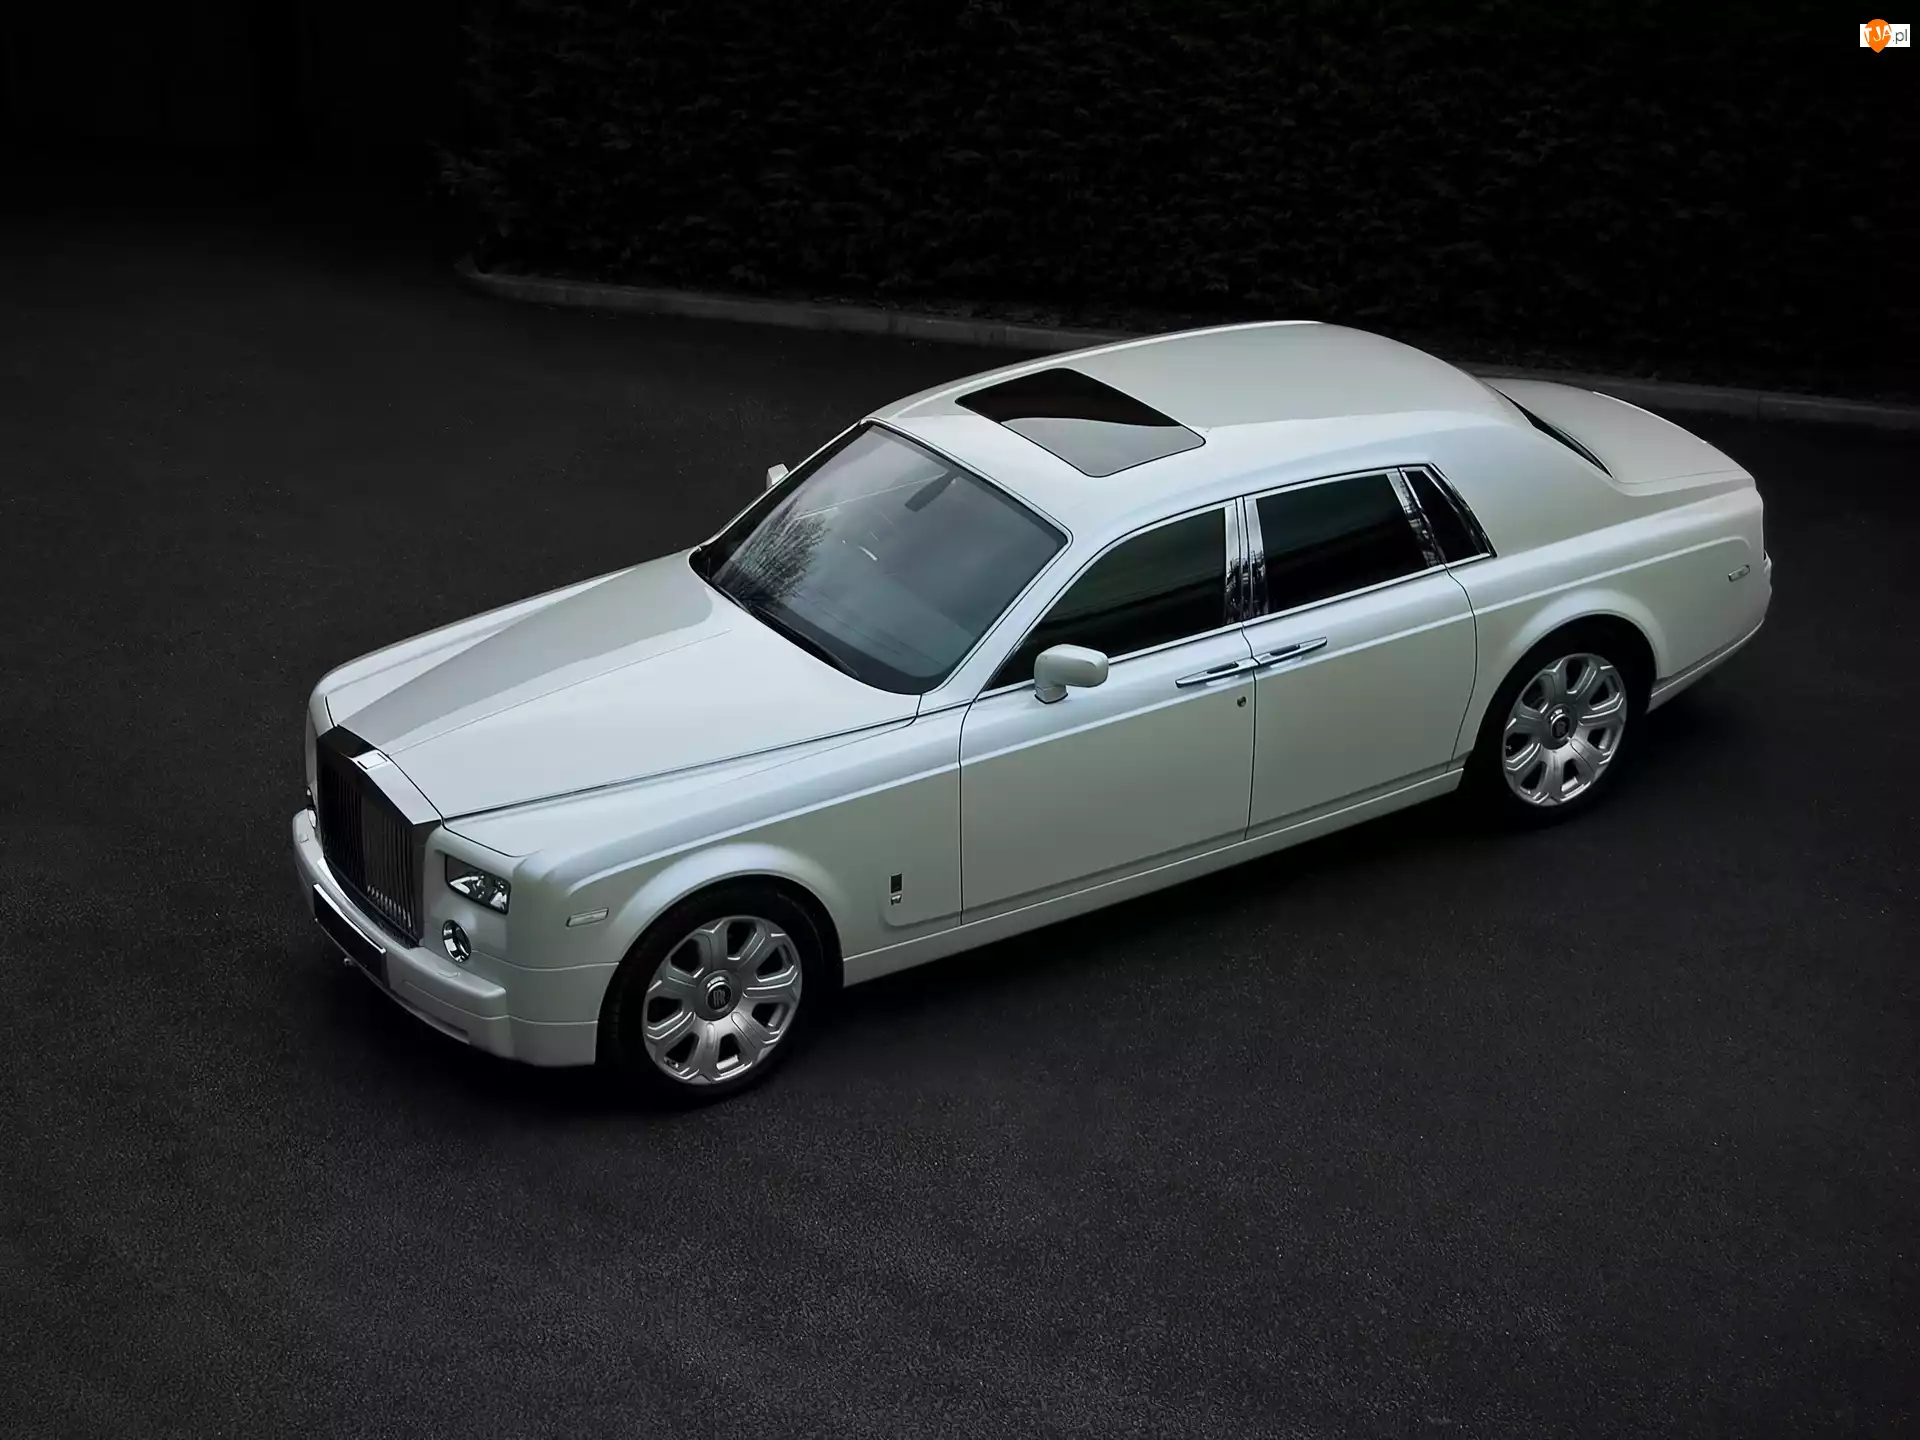 Rolls-Royce Phantom, Szyberdach